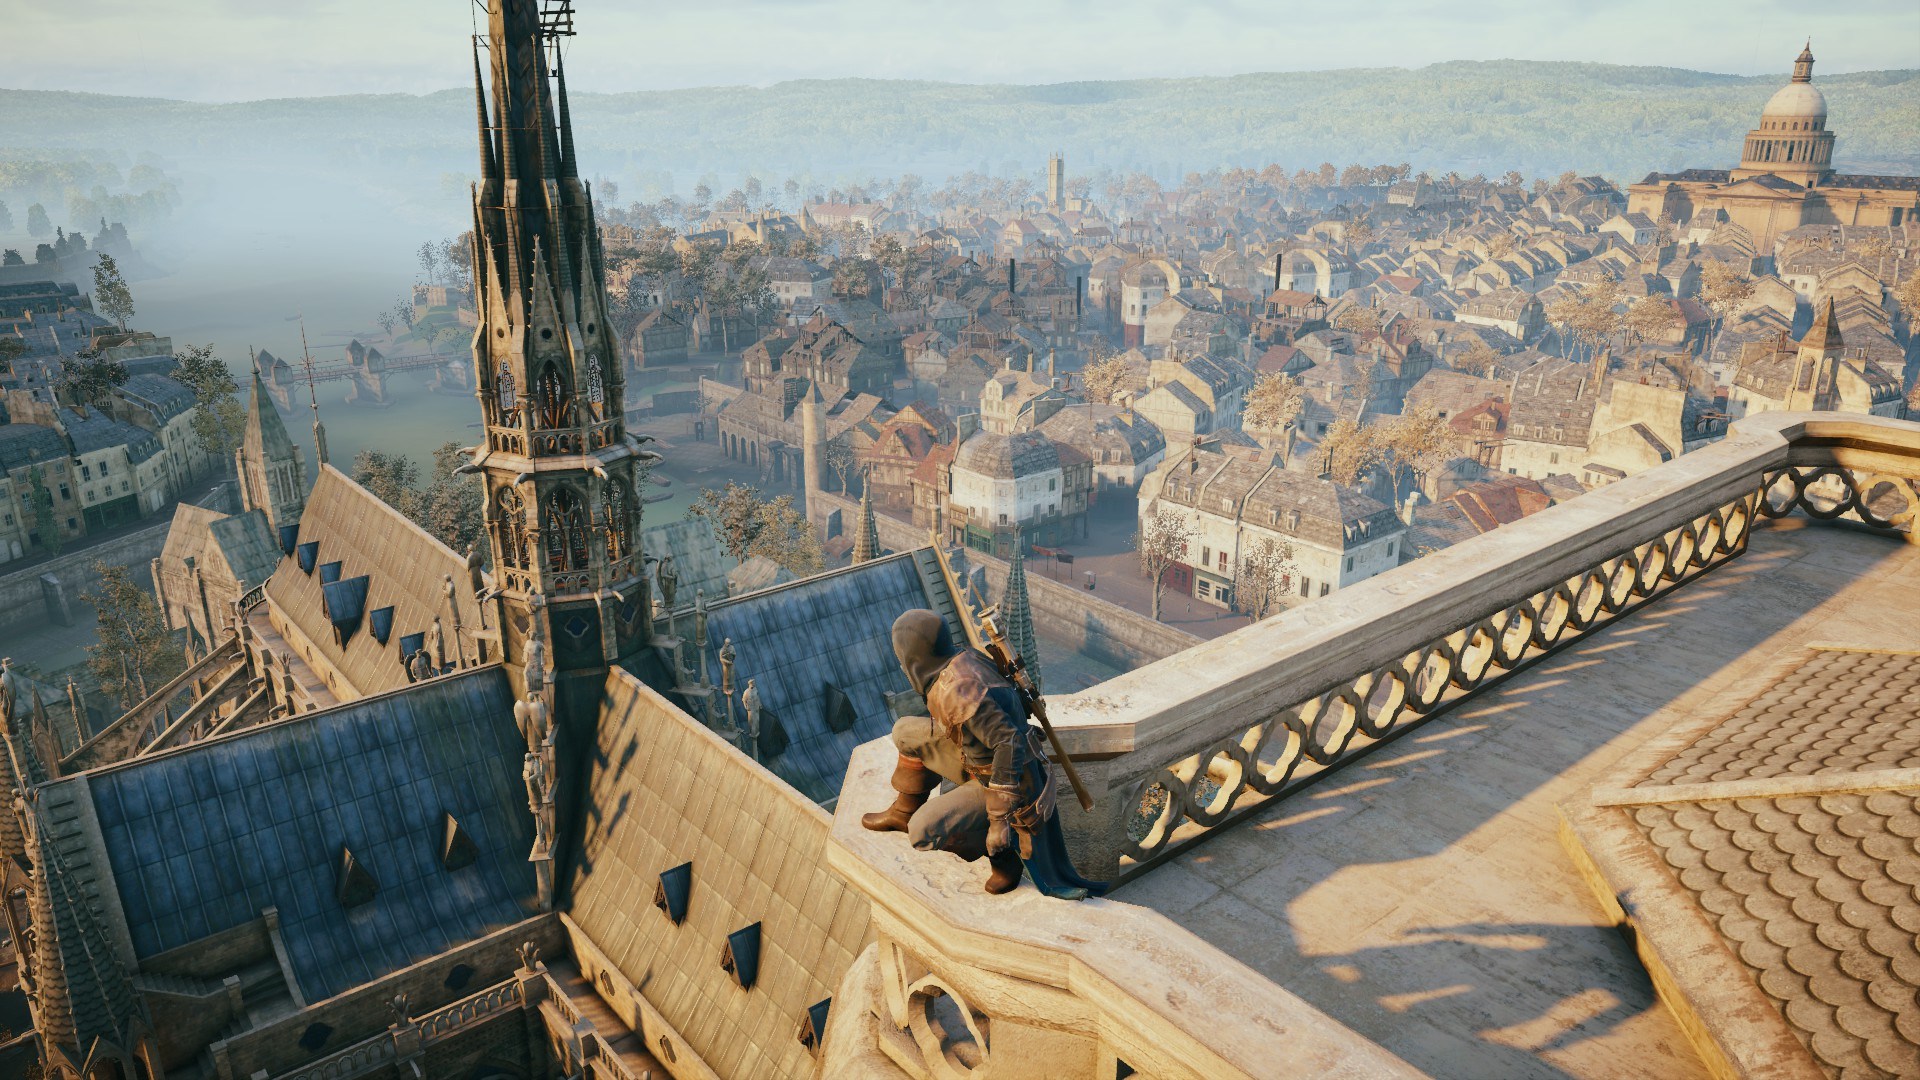 La aguja de Notre Dame en el videojuego “Assassin’s Creed Unity”.